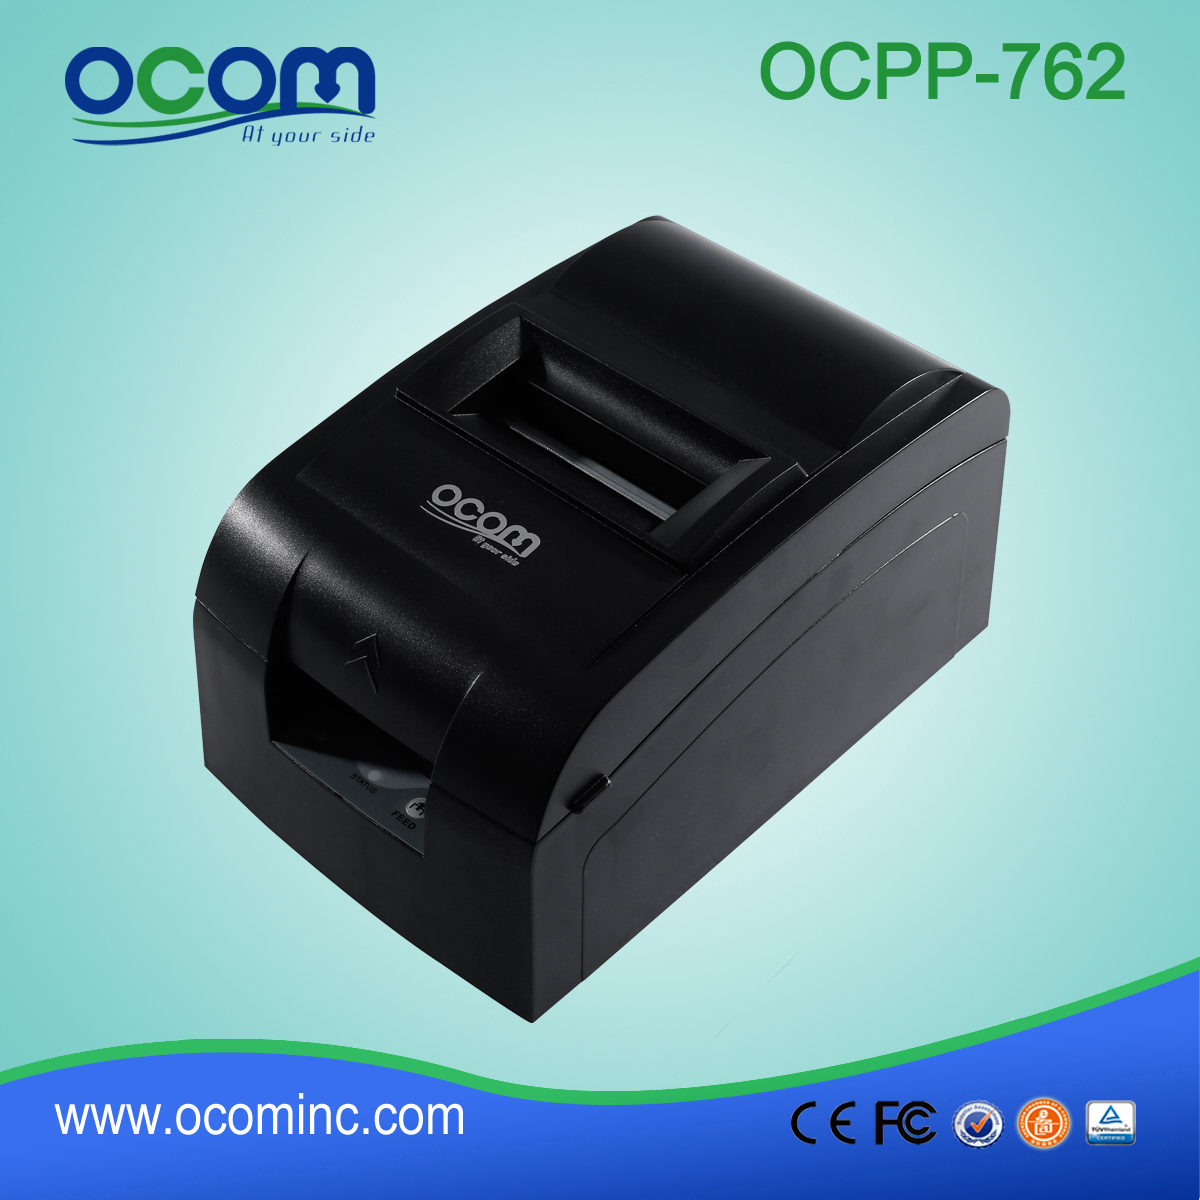 76 мм принт-принтер с импульсной матрицей с ручным резаком OCPP-762-U